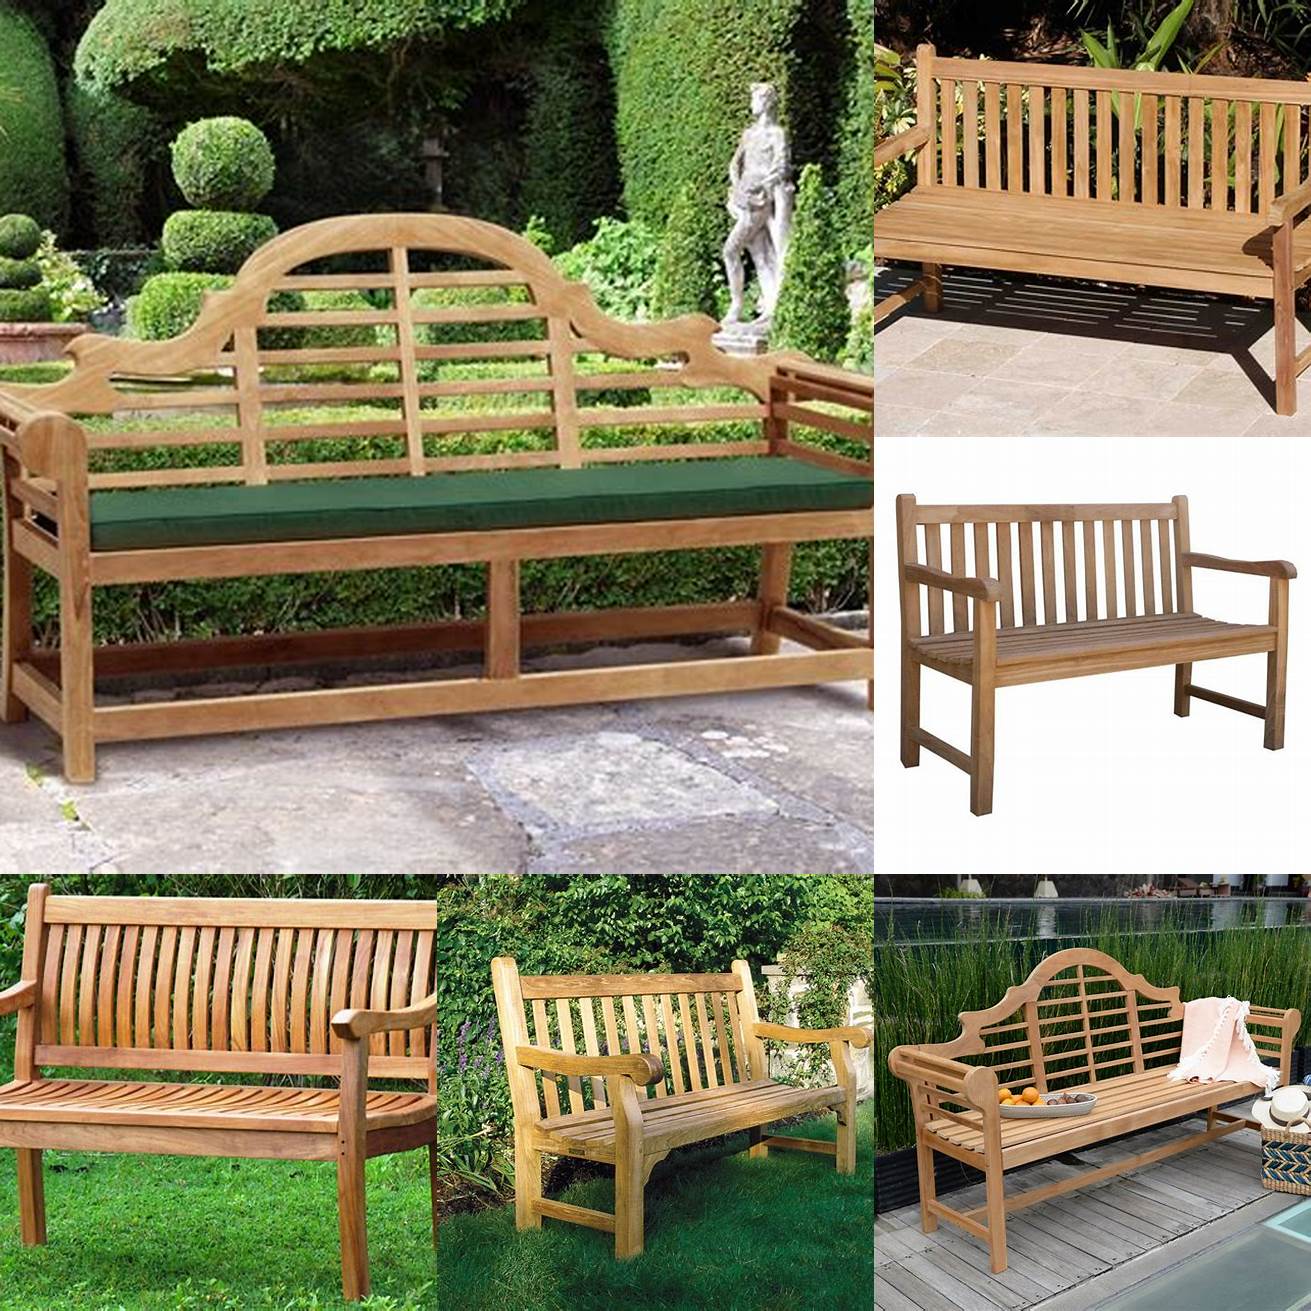 A contemporary teak garden bench seat